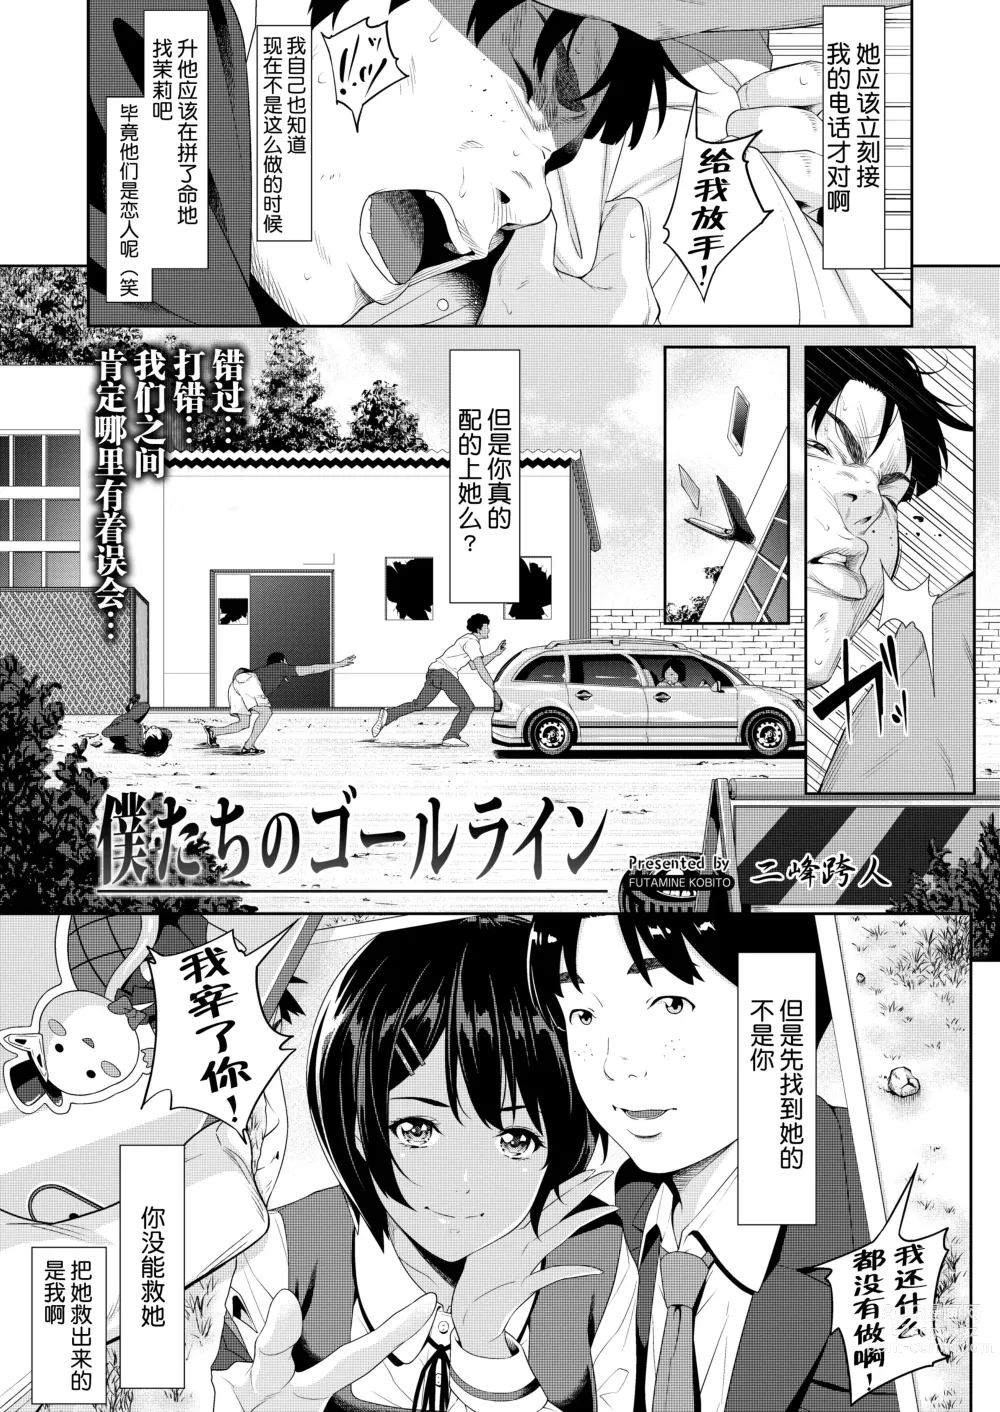 Page 1 of manga 僕たちのゴールライン